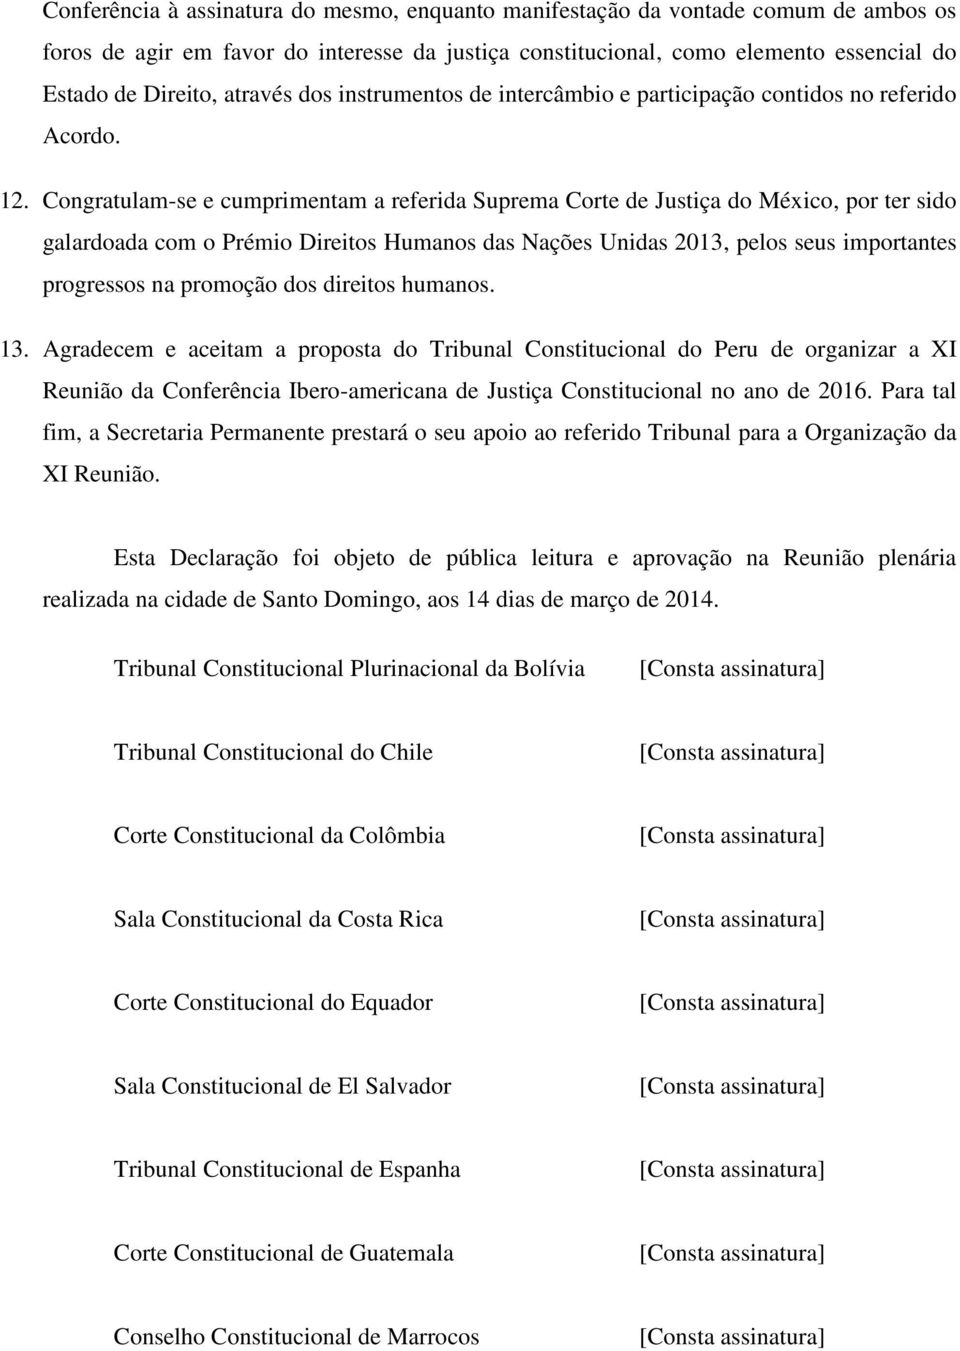 Congratulam-se e cumprimentam a referida Suprema Corte de Justiça do México, por ter sido galardoada com o Prémio Direitos Humanos das Nações Unidas 2013, pelos seus importantes progressos na